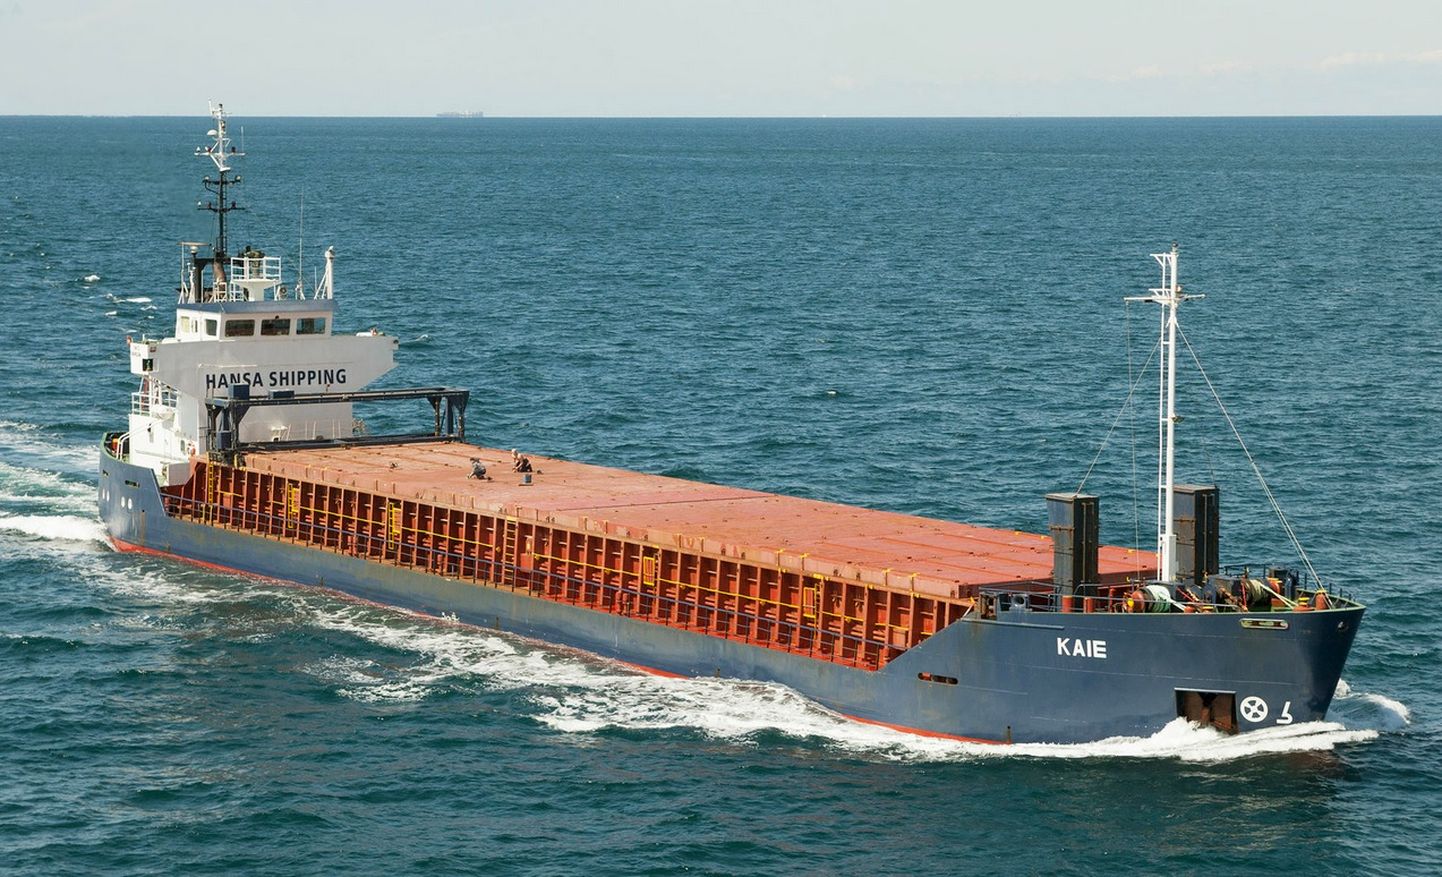 Судно Kaie, который принадлежит судоходному предприятию Hansa Shipping.